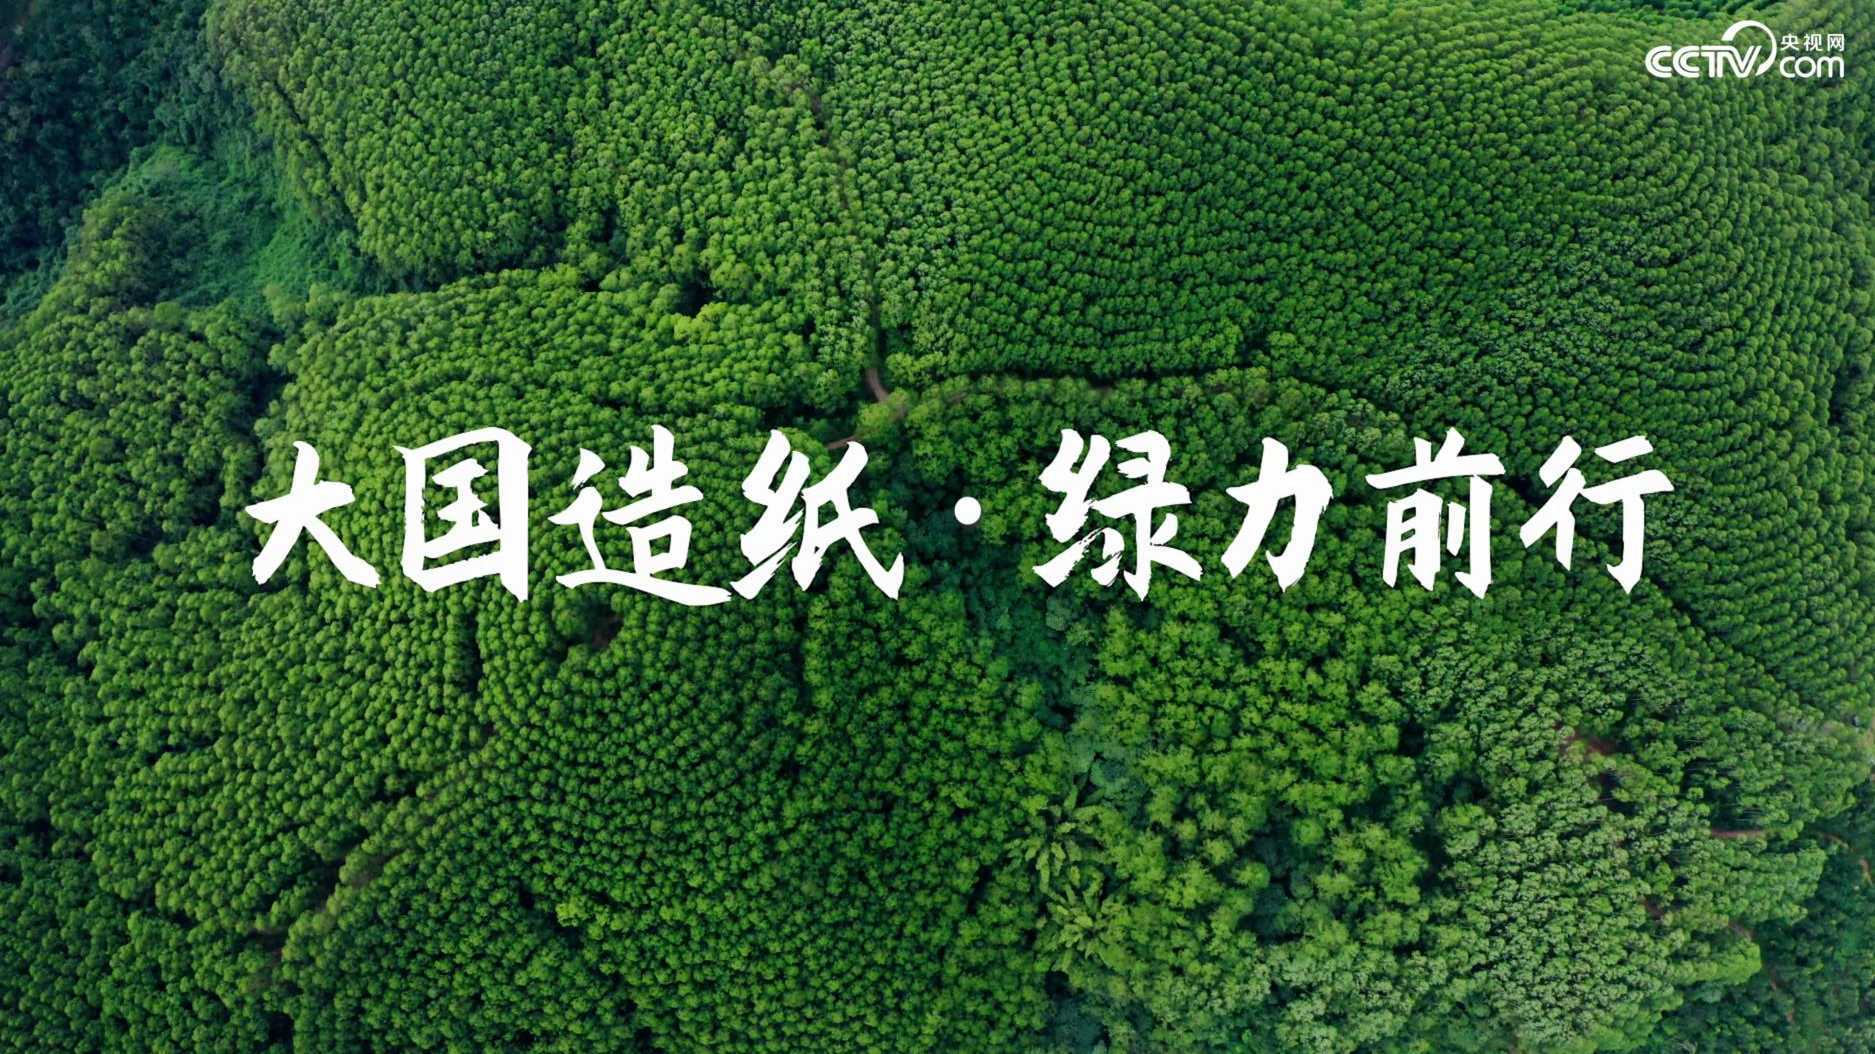 央视网x金光集团【App green】大国造纸·绿力前行